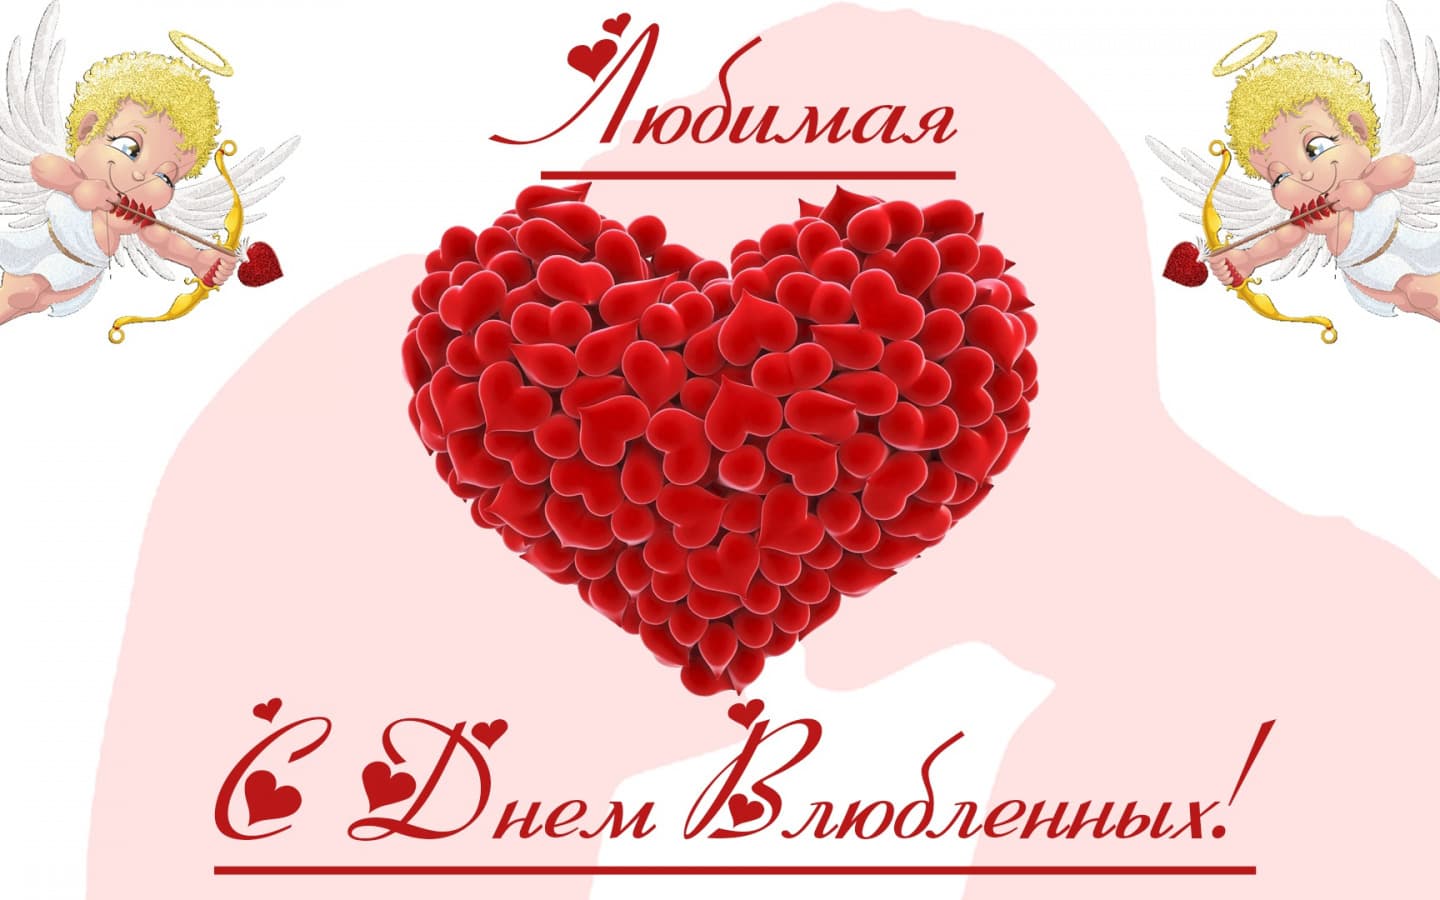 Бесплатная открытка на день Святого Валентина любимой 02